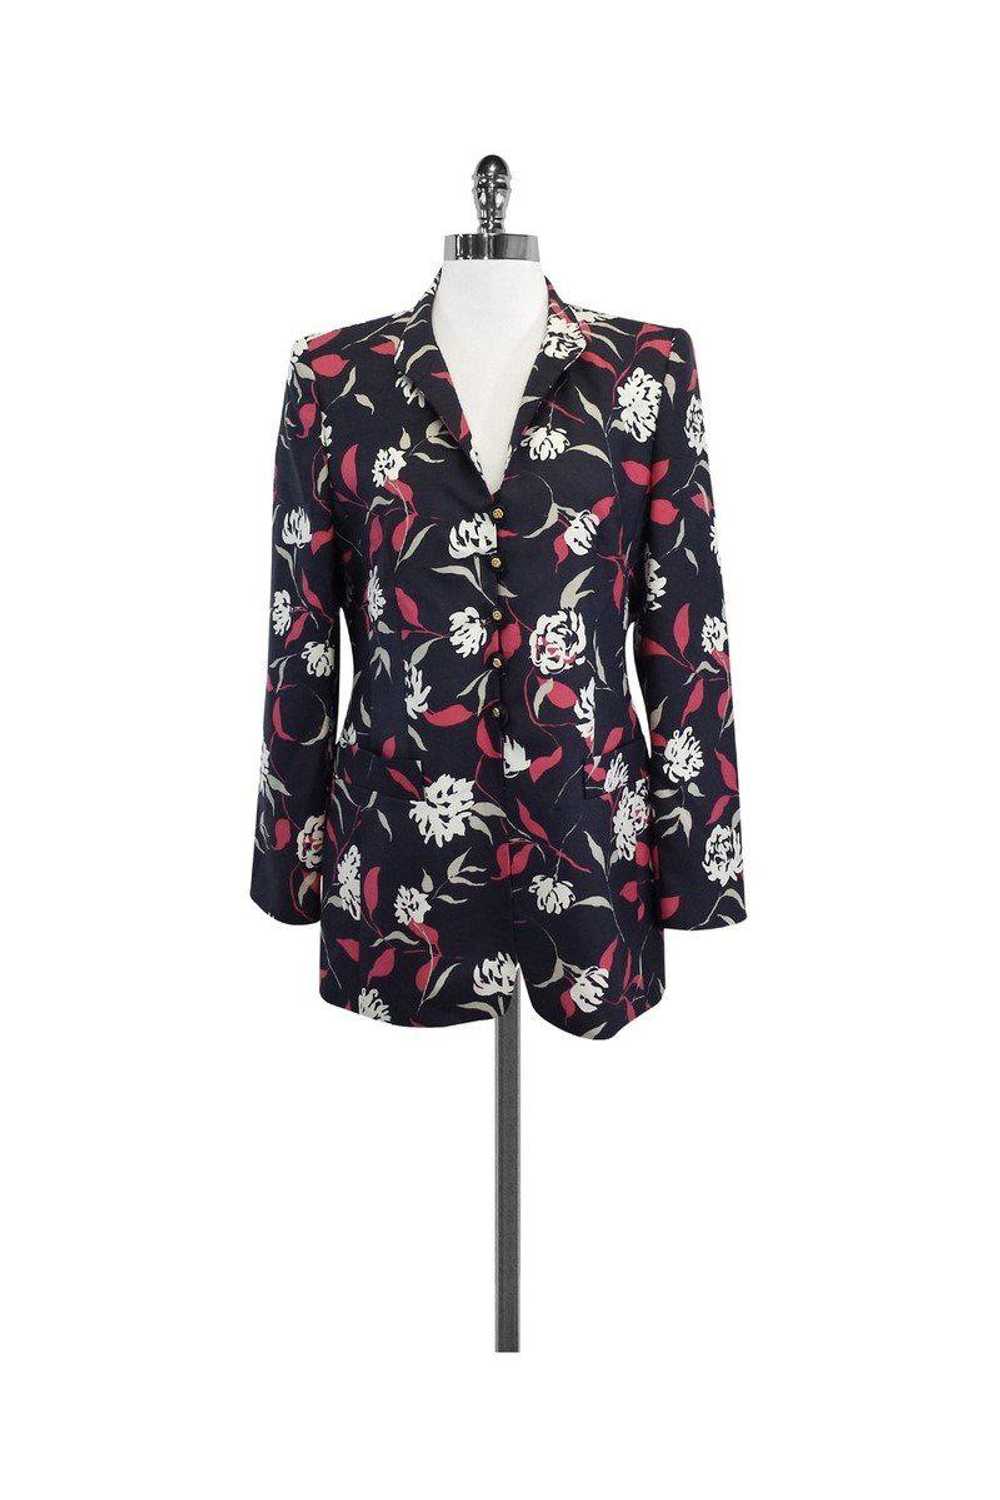 Louis Feraud - Floral Print Silk Suit Jacket Sz 8 - image 1